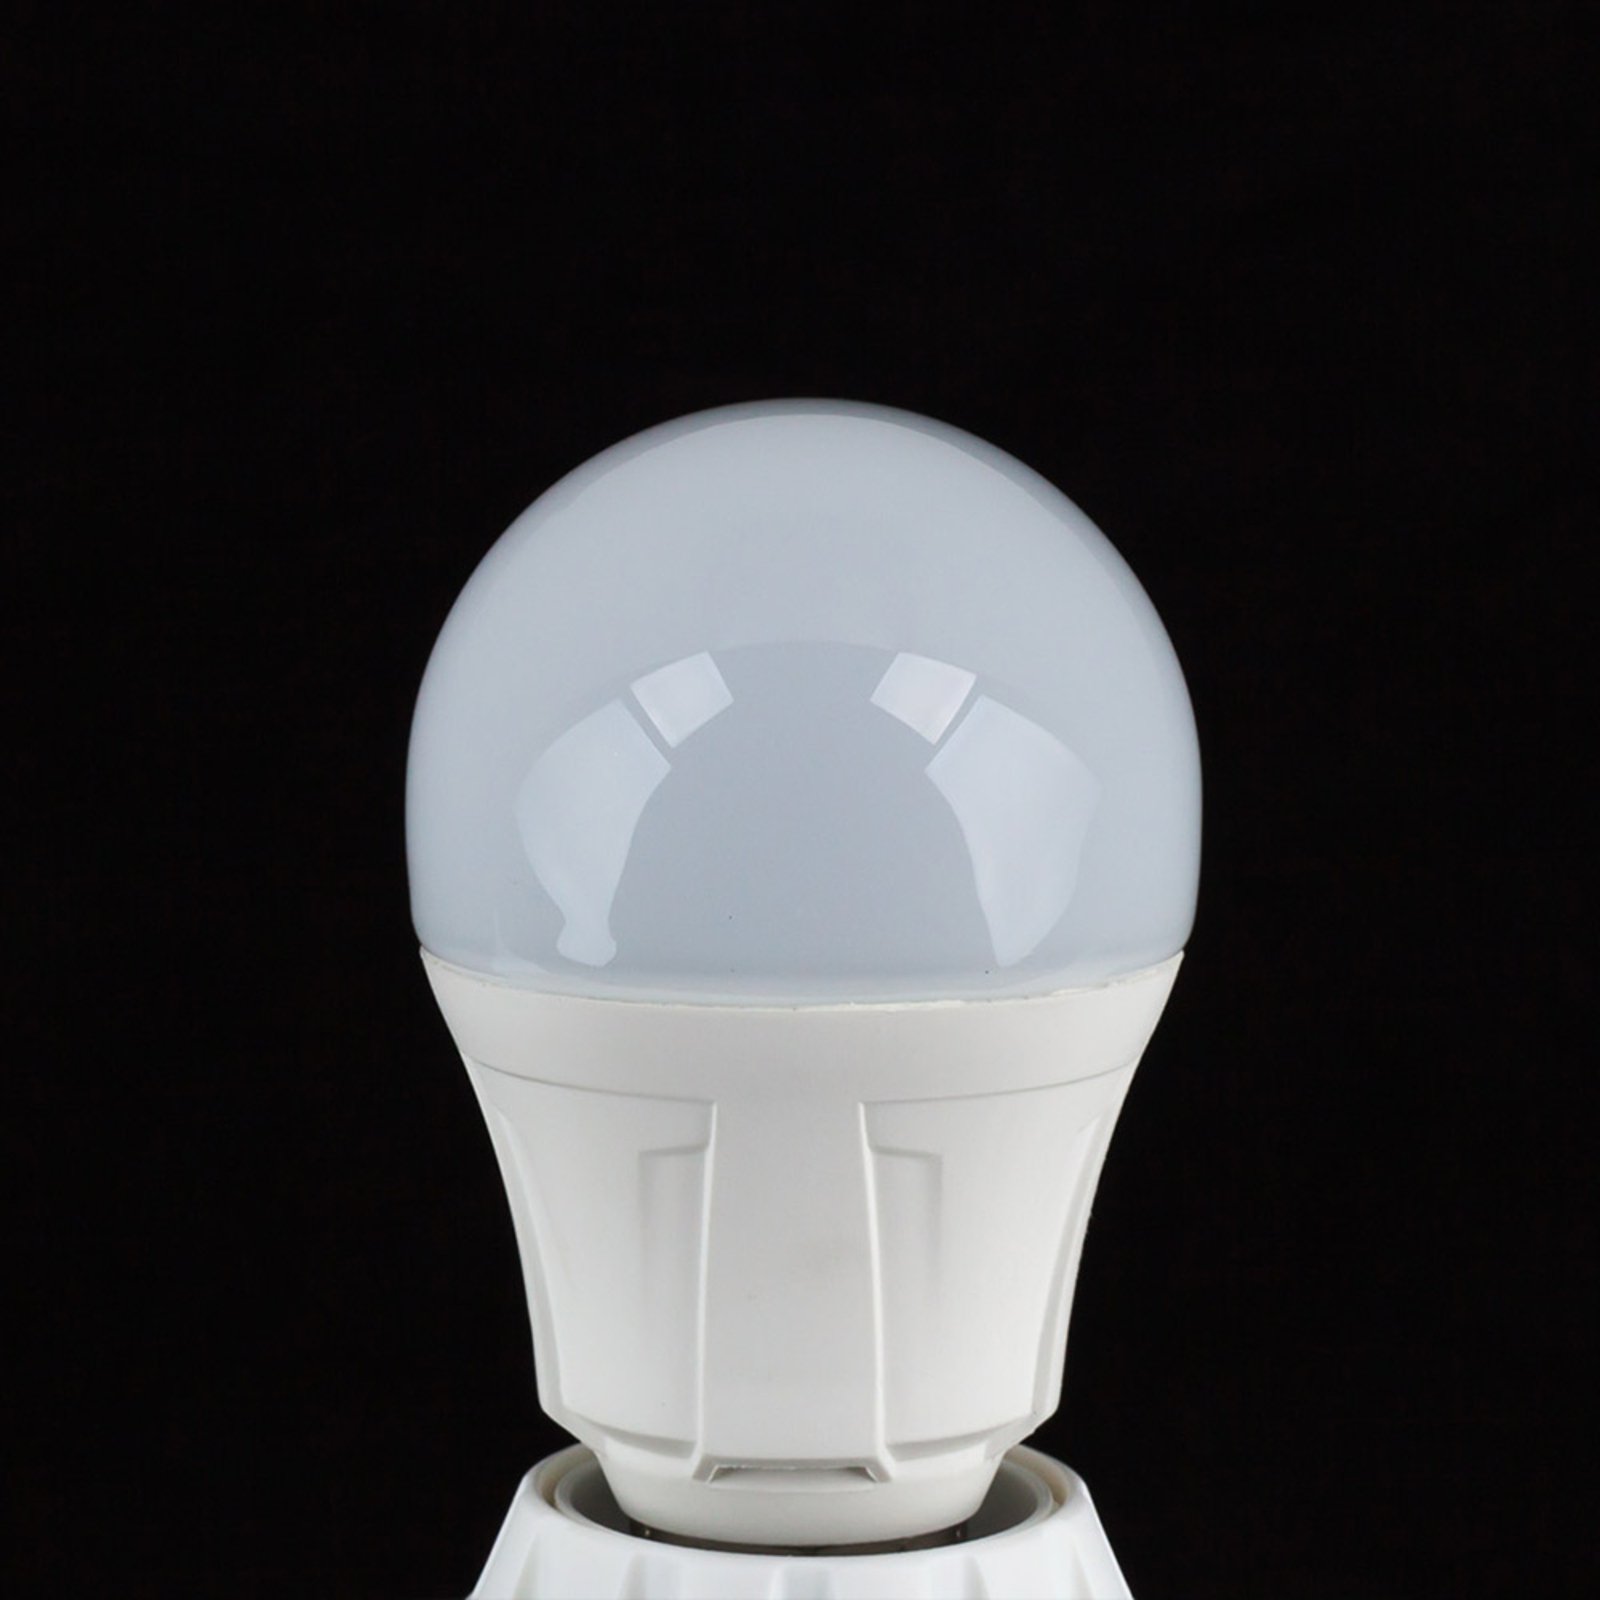 E27 11W 830 ampoule LED blanc chaud